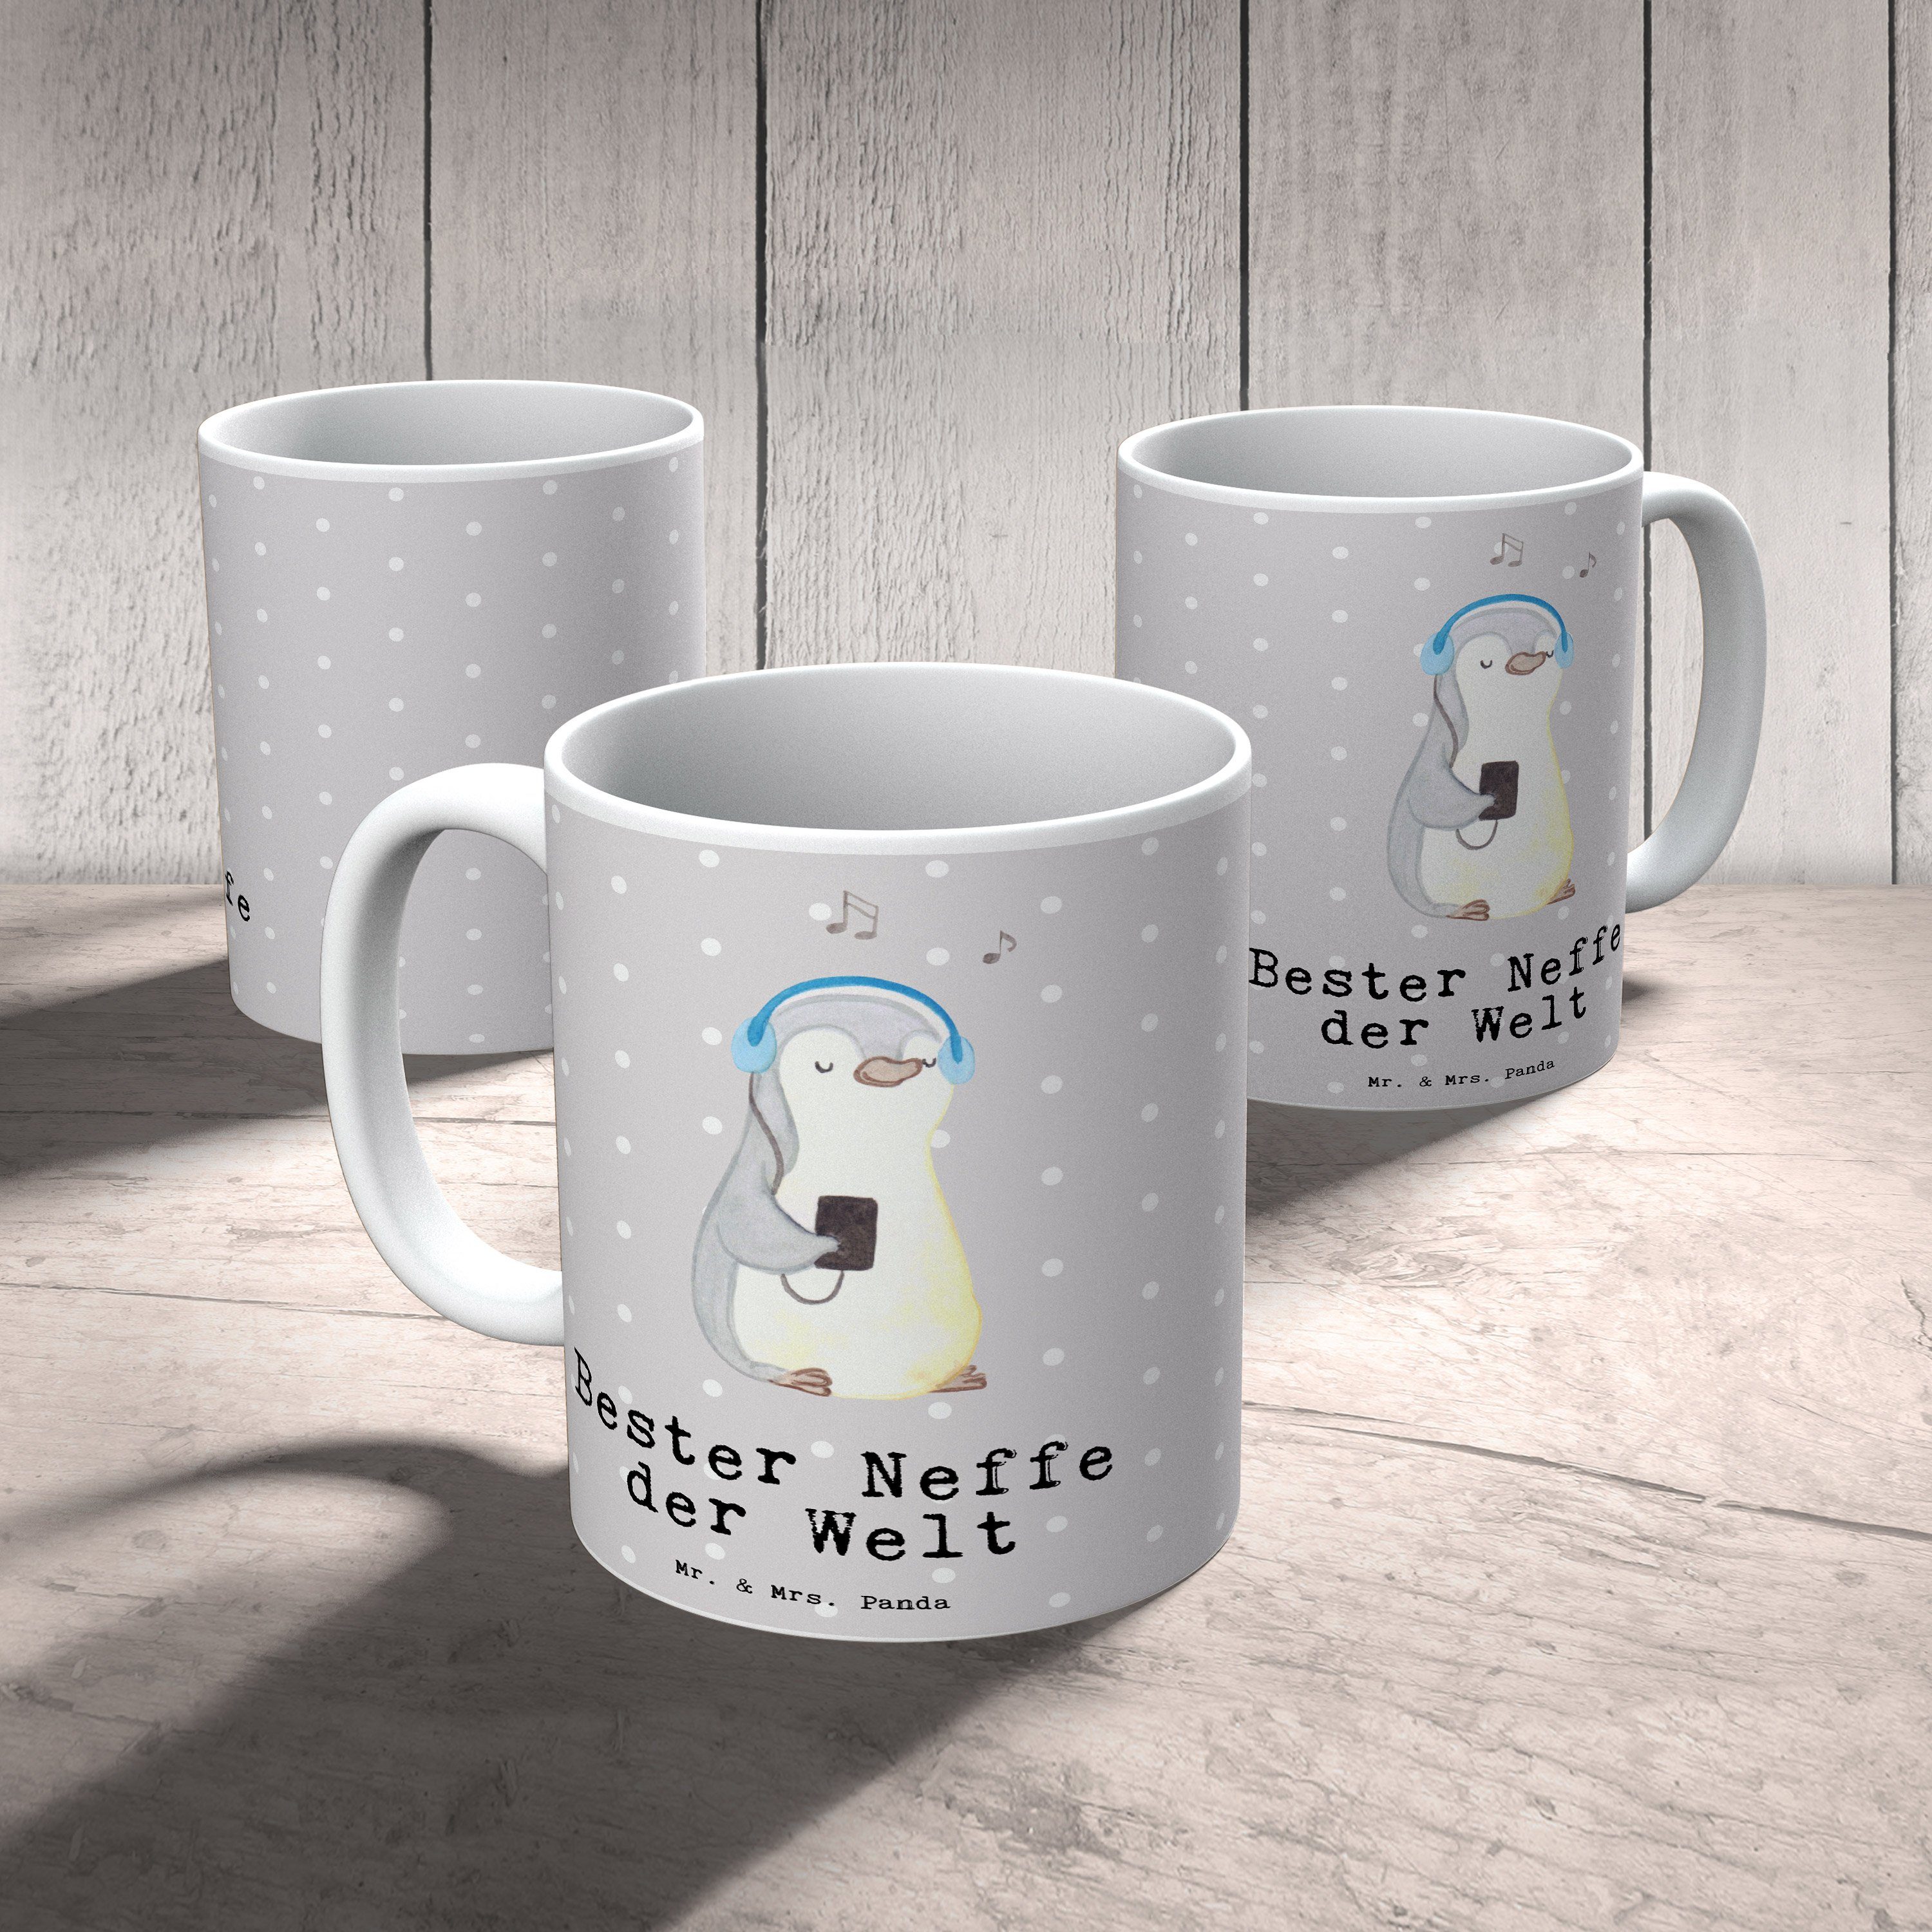 Pastell & Mr. Grau Keramik - Neffe Frühstück, Welt Tasse Bester G, der Mrs. Pinguin Panda - Geschenk,